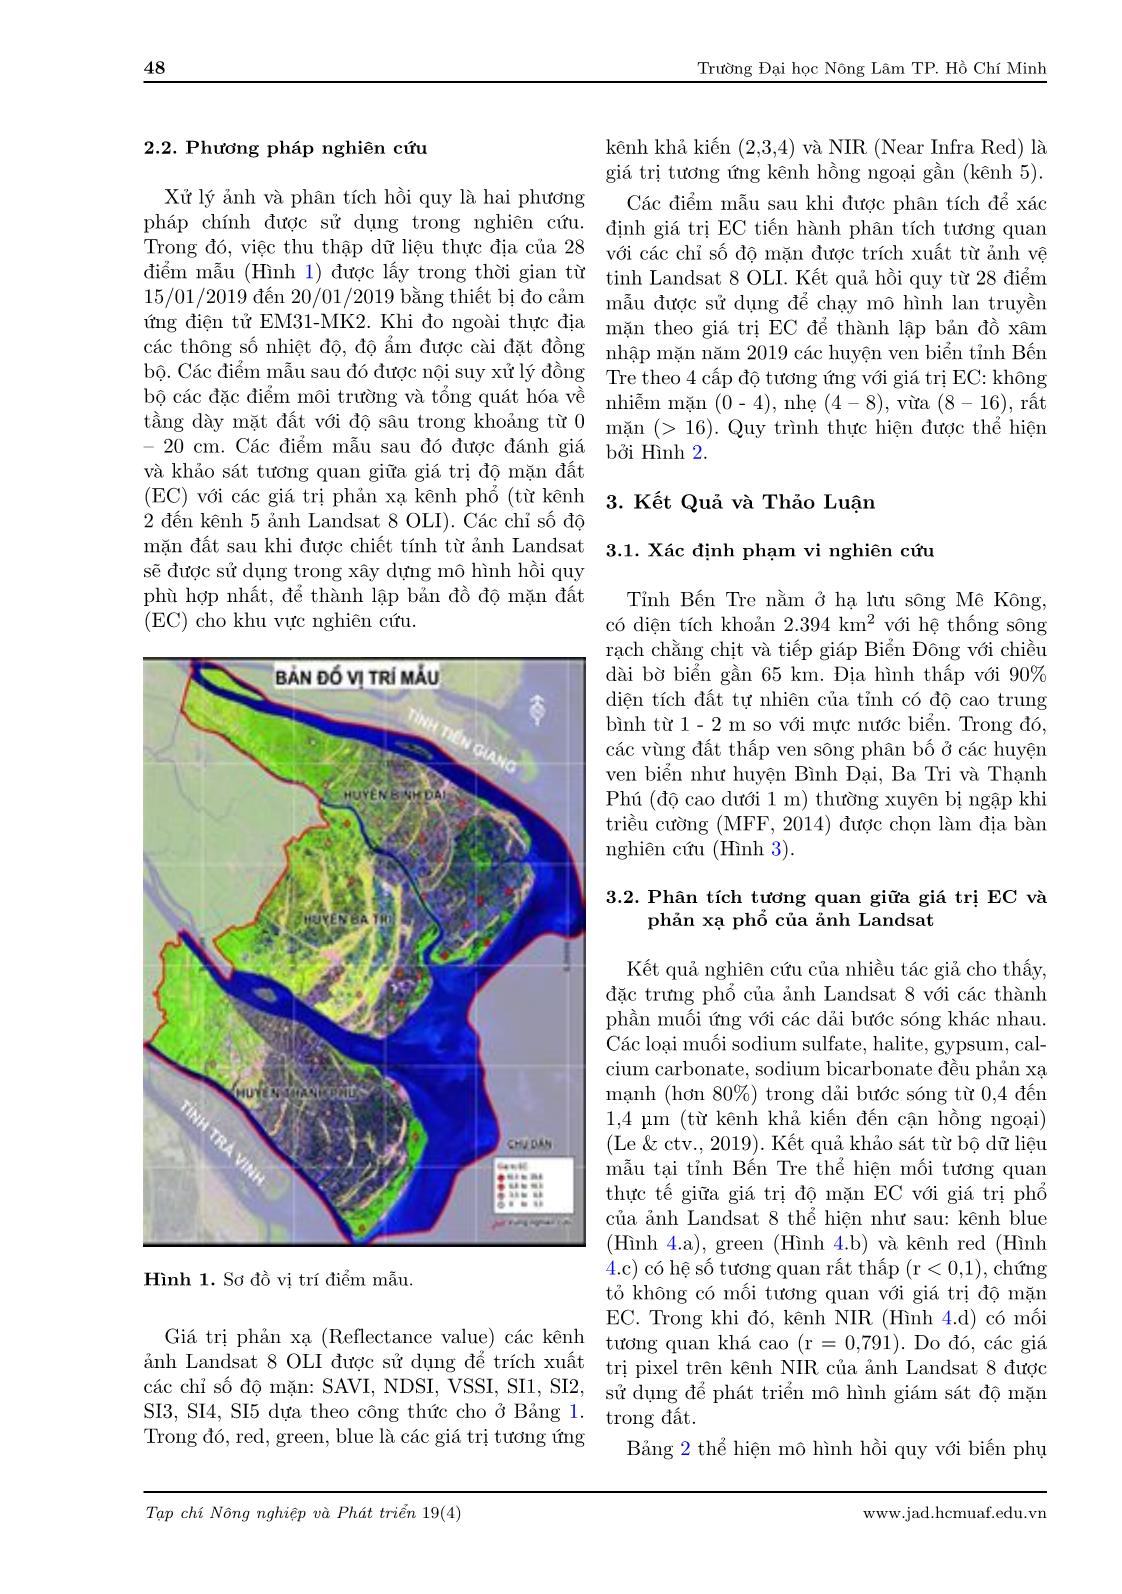 Ứng dụng ảnh Landsat 8 đánh giá xâm nhập mặn các huyện ven biển thuộc tỉnh Bến Tre trang 4